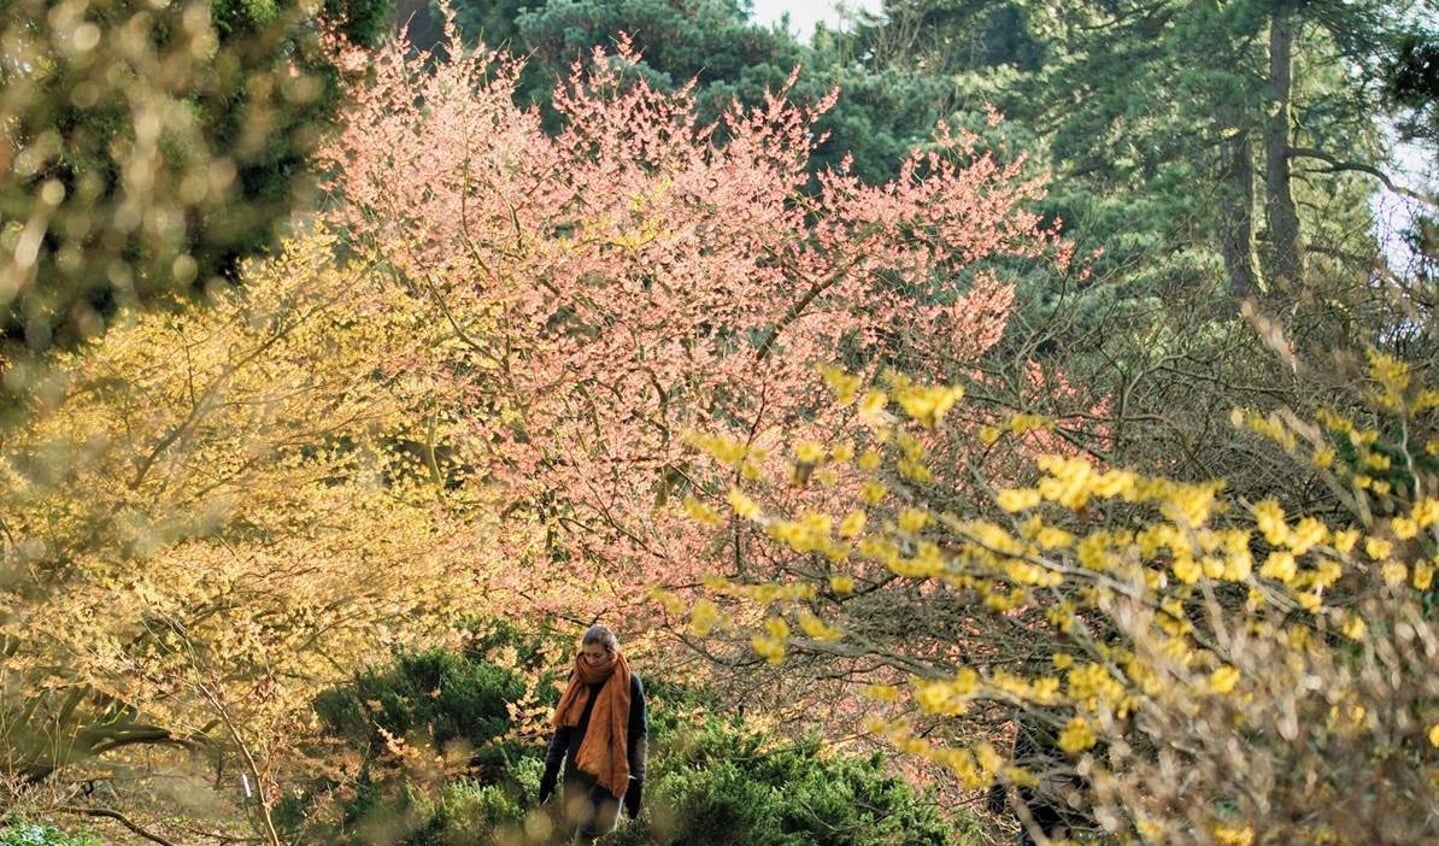  De bloemen van toverhazelaar, Hamamelis, bloeien meestal op kale takken. Oude exemplaren groeien hoog en breed, waardoor je tussen kleurrijke, geurige wolken wandelt.
  Copyright: Arboretum Kalmthout